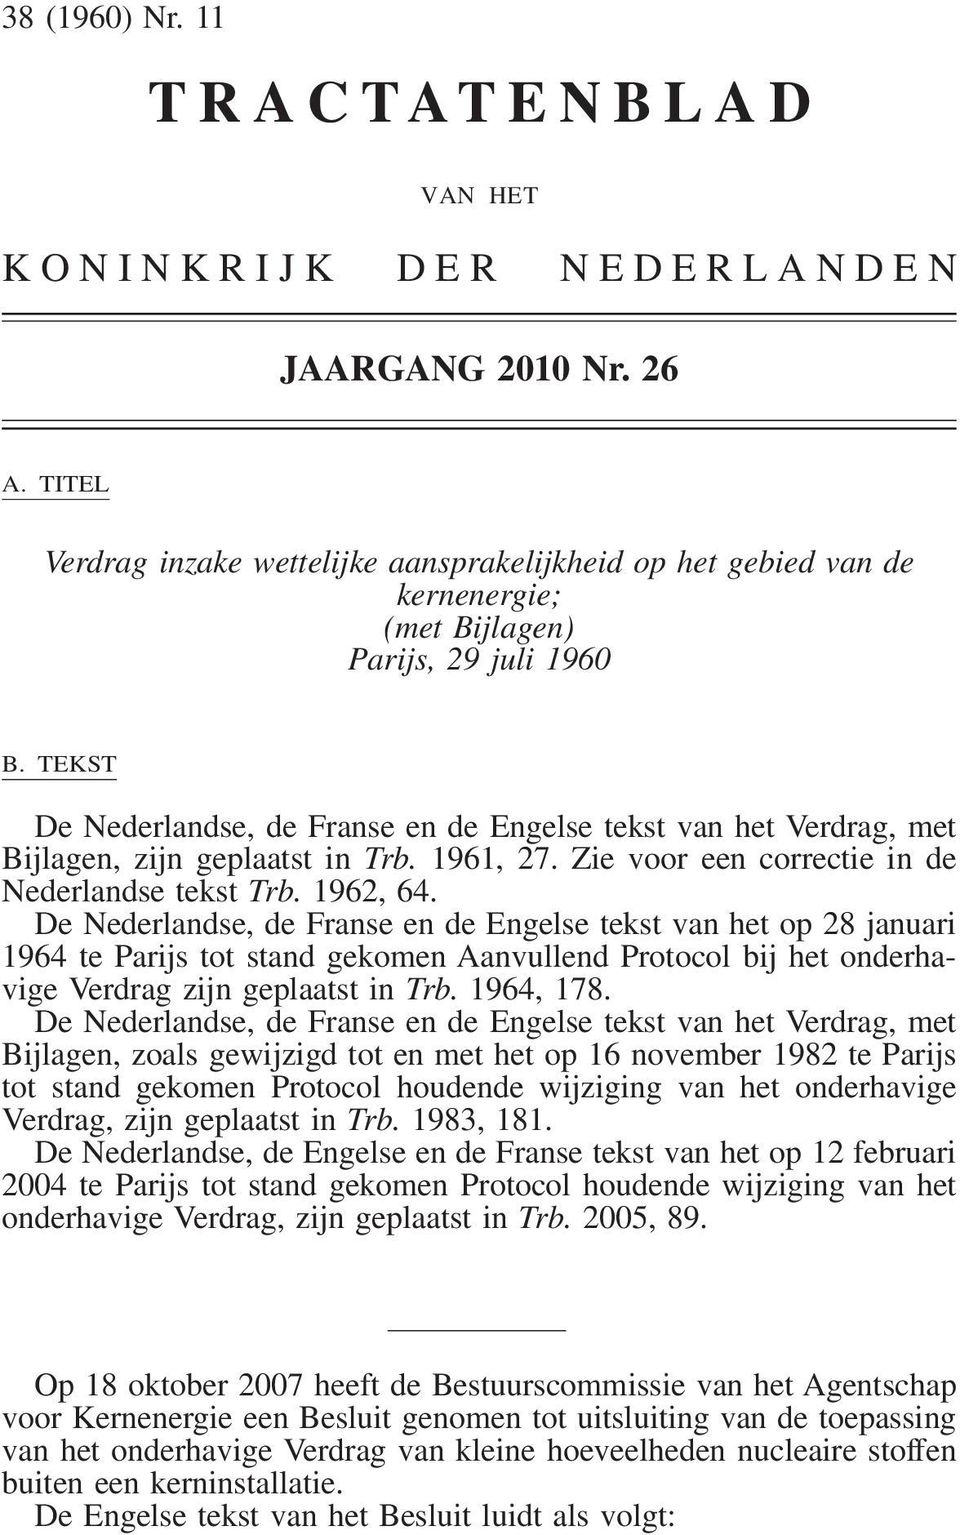 TEKST De Nederlandse, de Franse en de Engelse tekst van het Verdrag, met Bijlagen, zijn geplaatst in Trb. 1961, 27. Zie voor een correctie in de Nederlandse tekst Trb. 1962, 64.